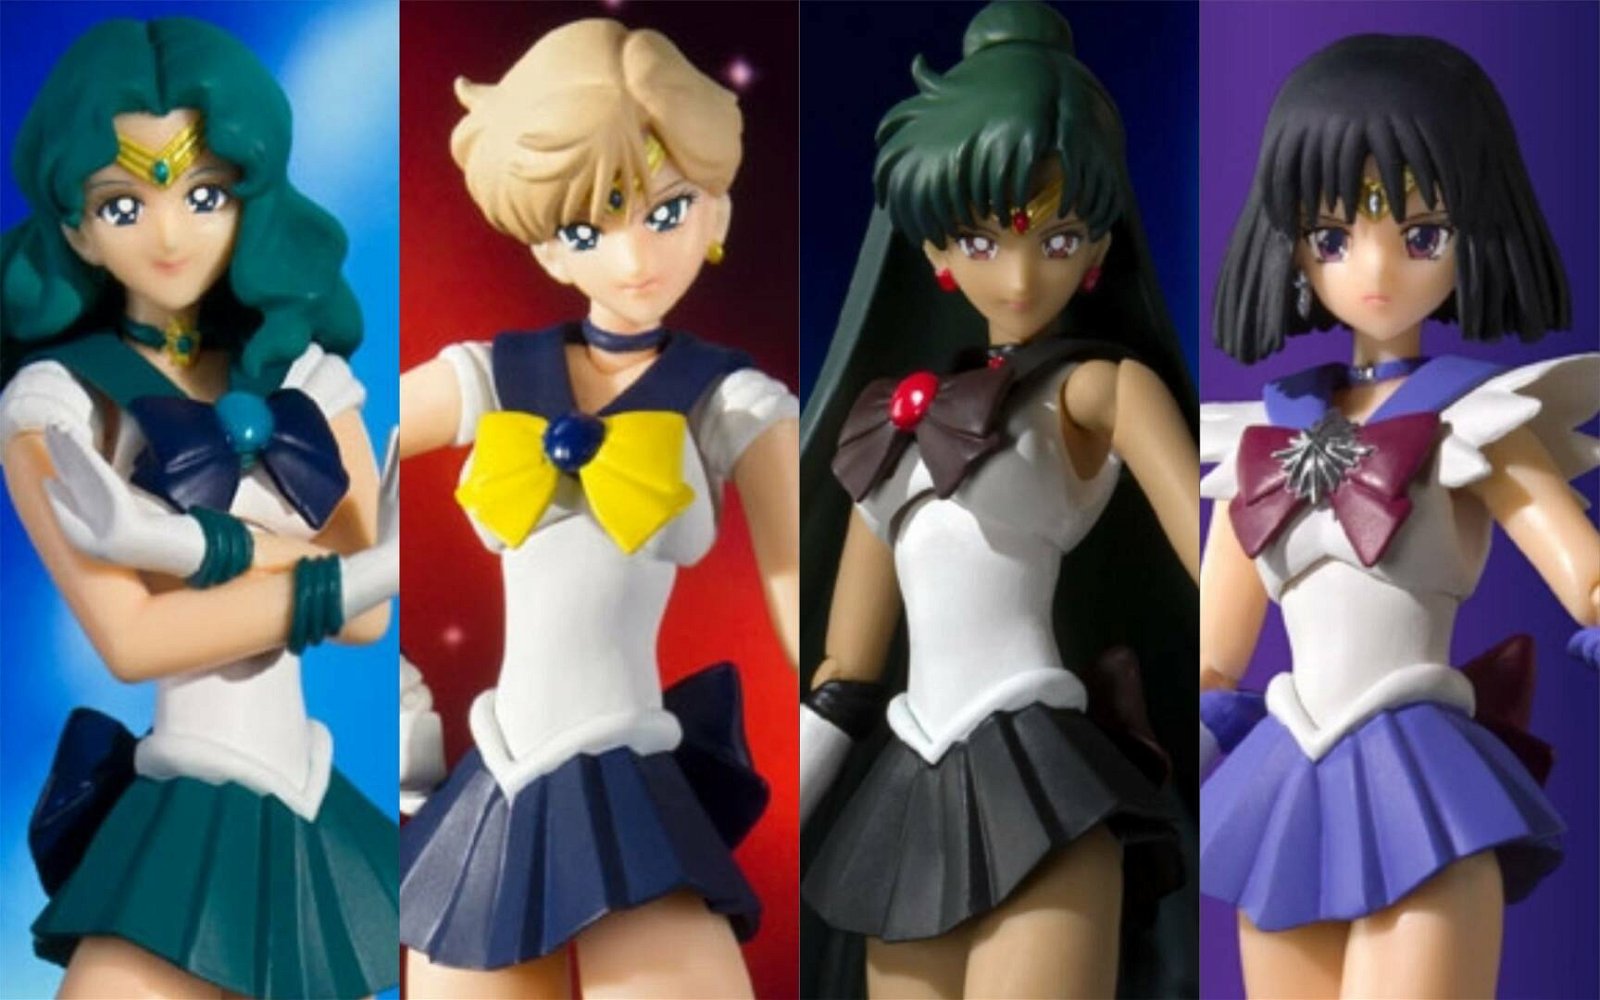 Immagine di Sailor Moon, da Tamashii Nations tornano altre S.H. Figuarts con nuovi colori